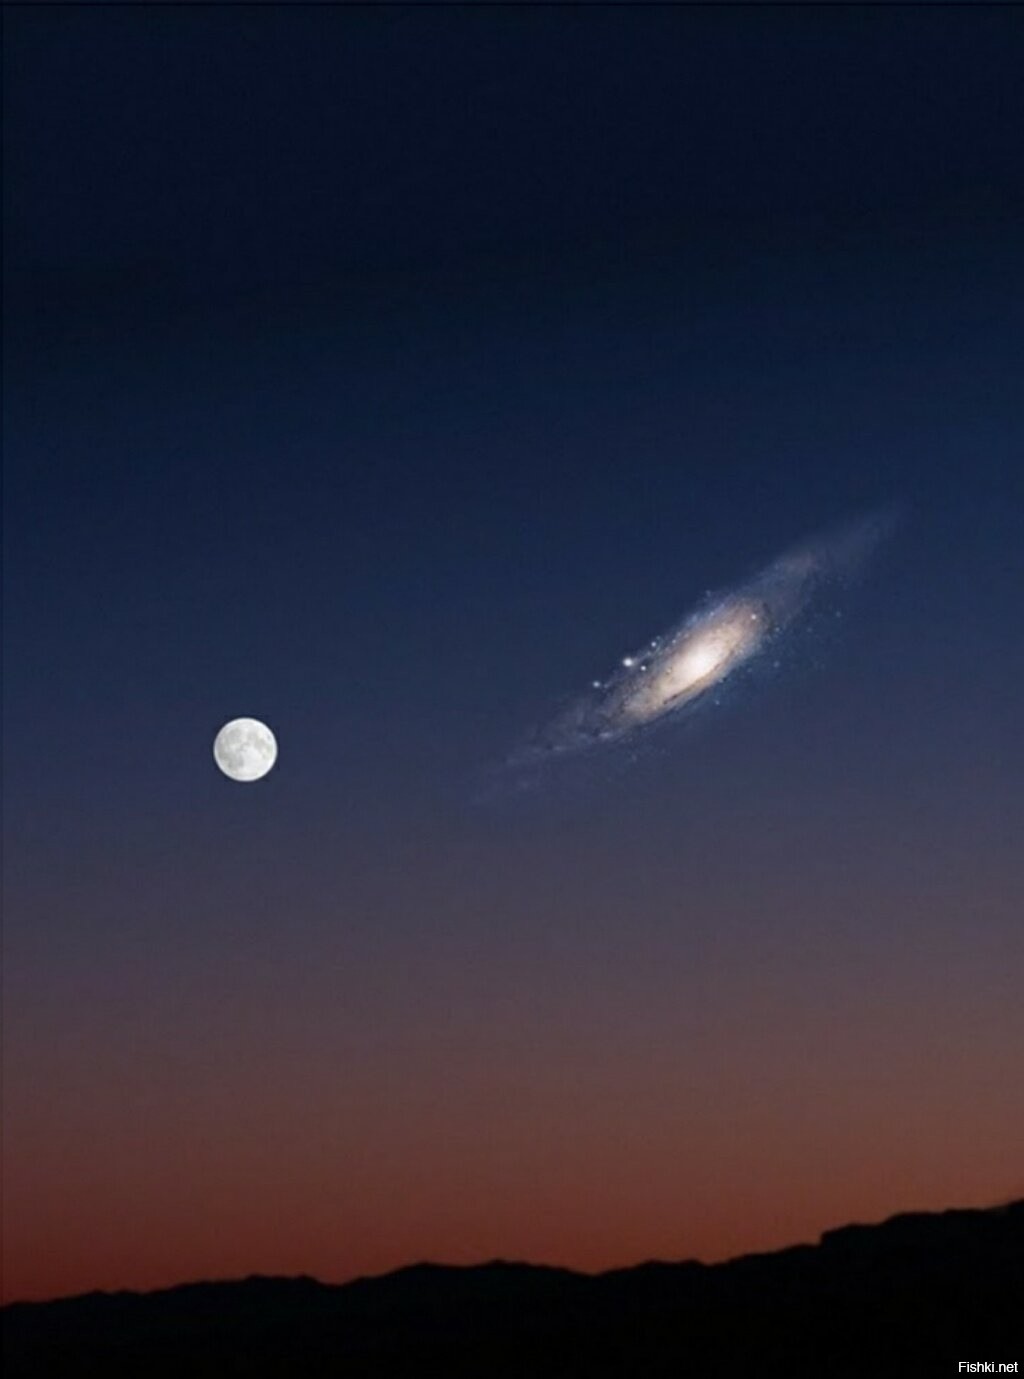 галактика андромеды на ночном небе фото